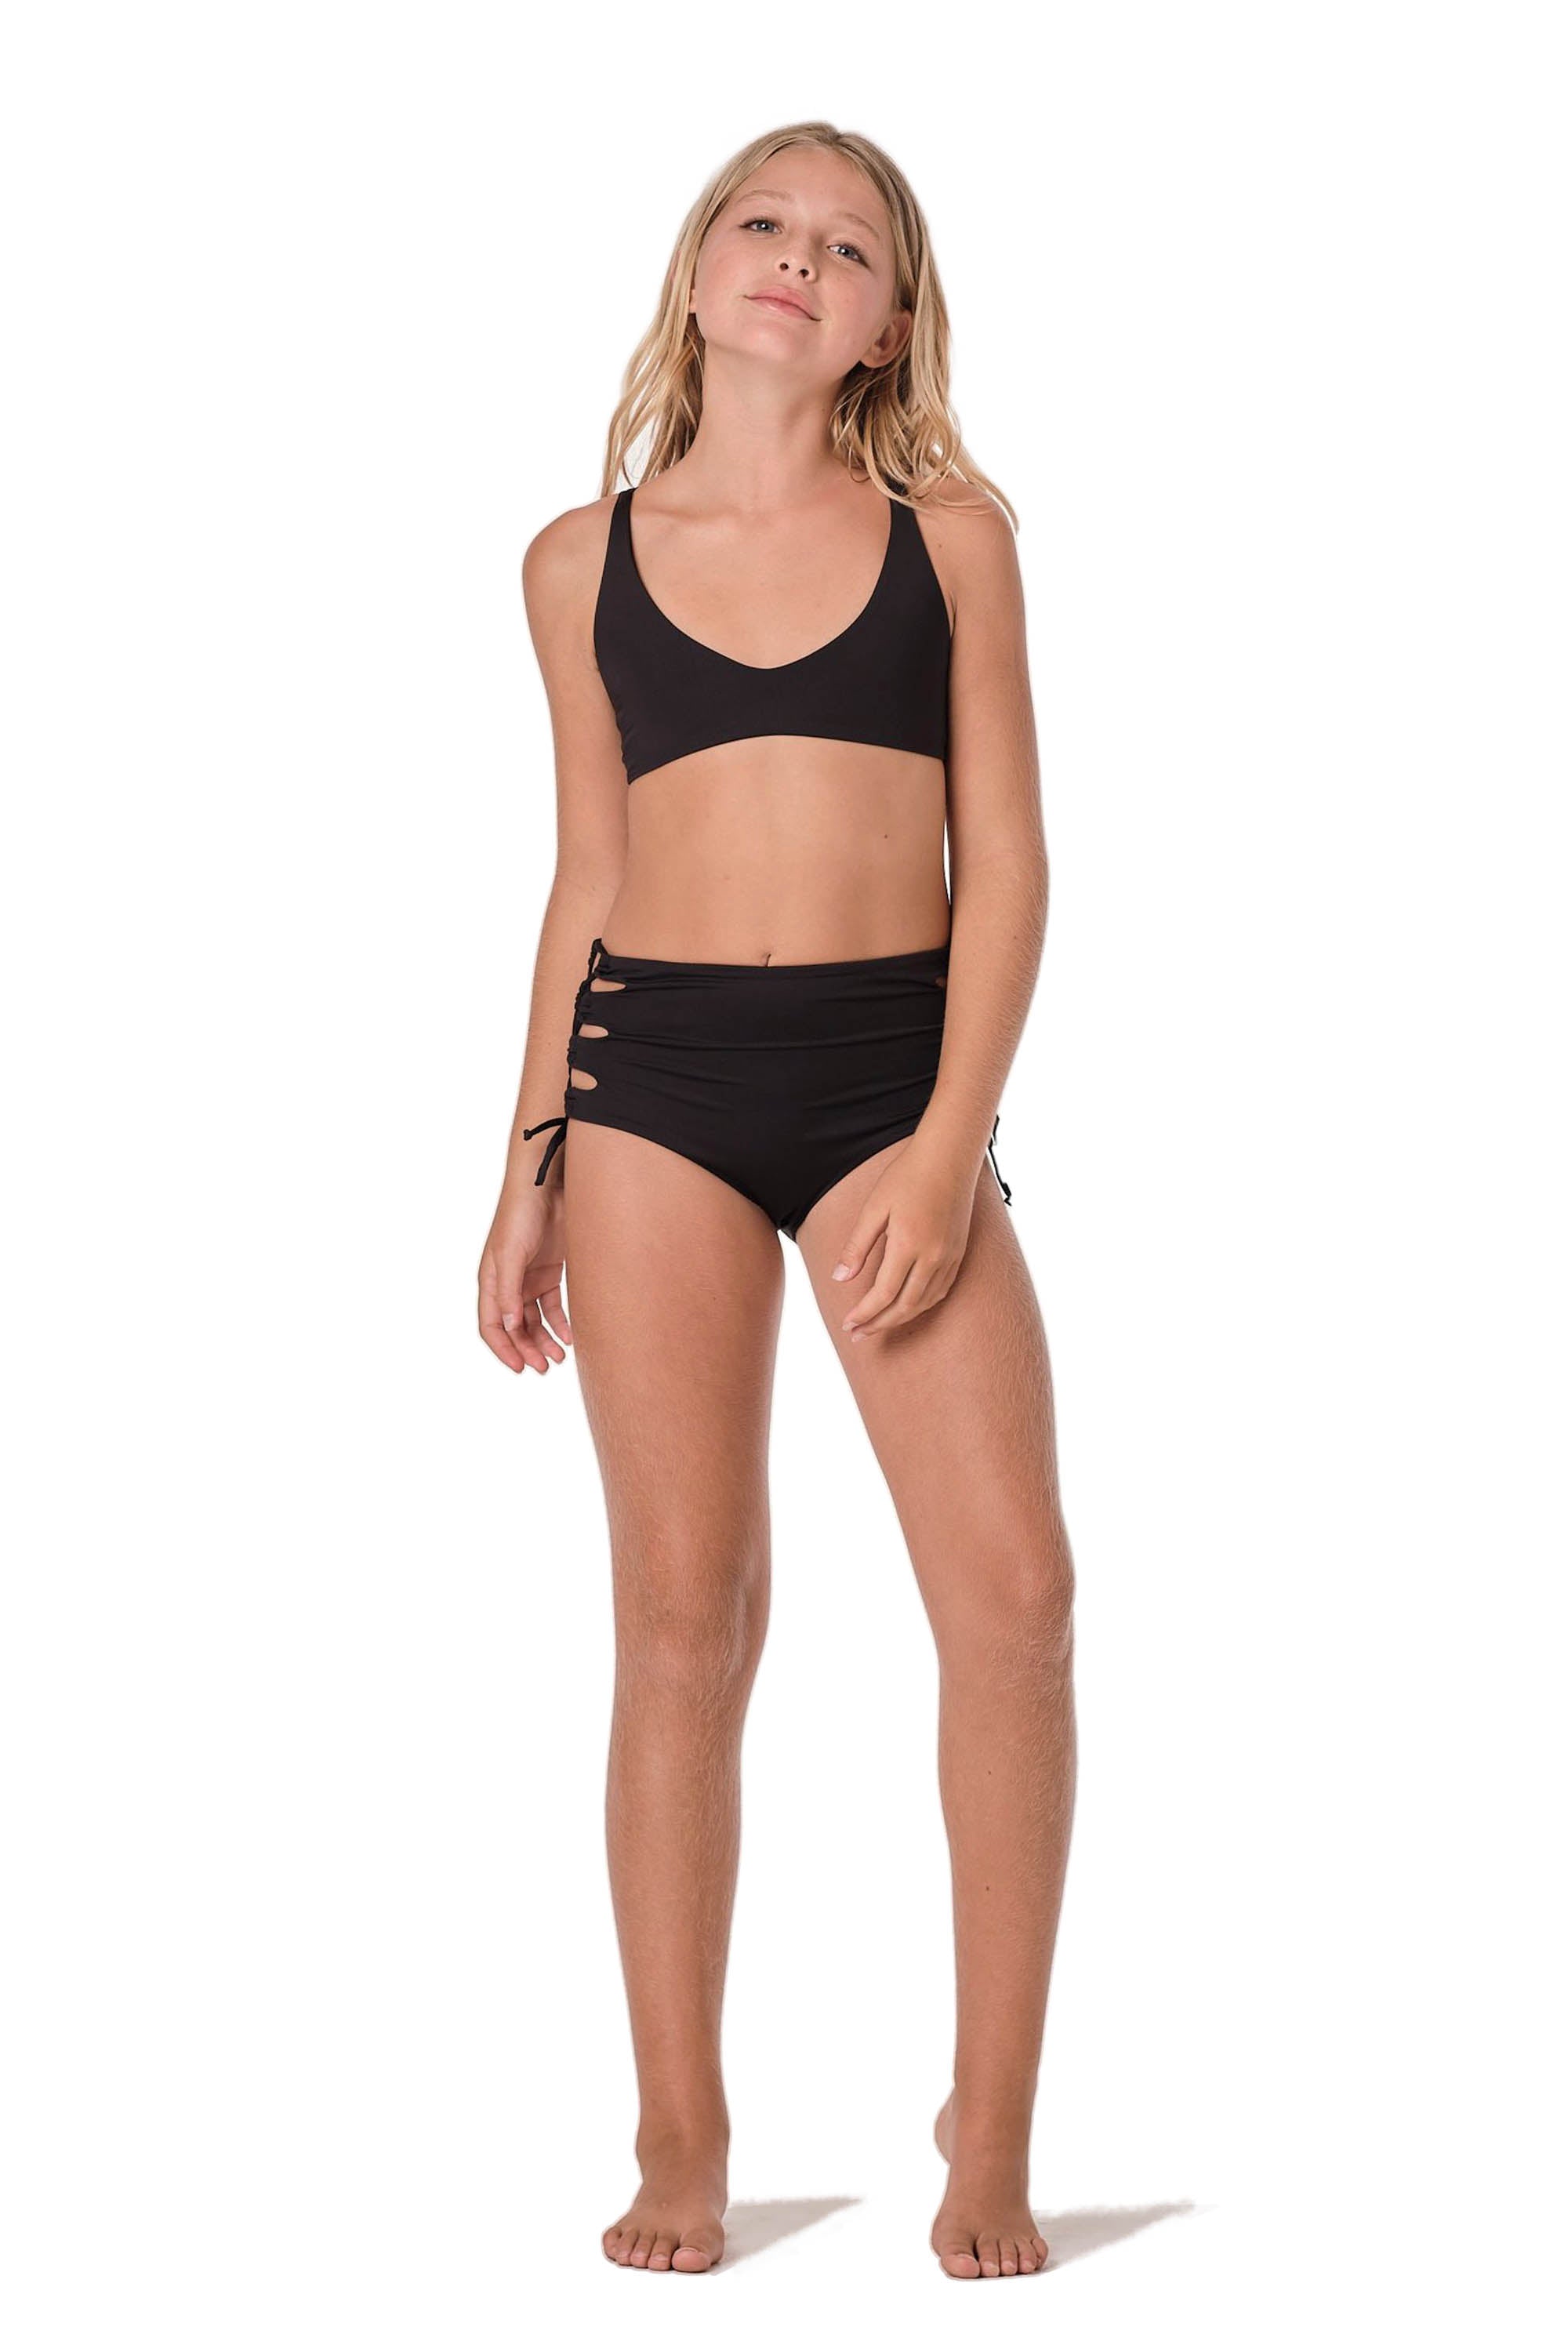 Plain Jane - Black Bikini Set (FINAL SALE) – Submarine Swim